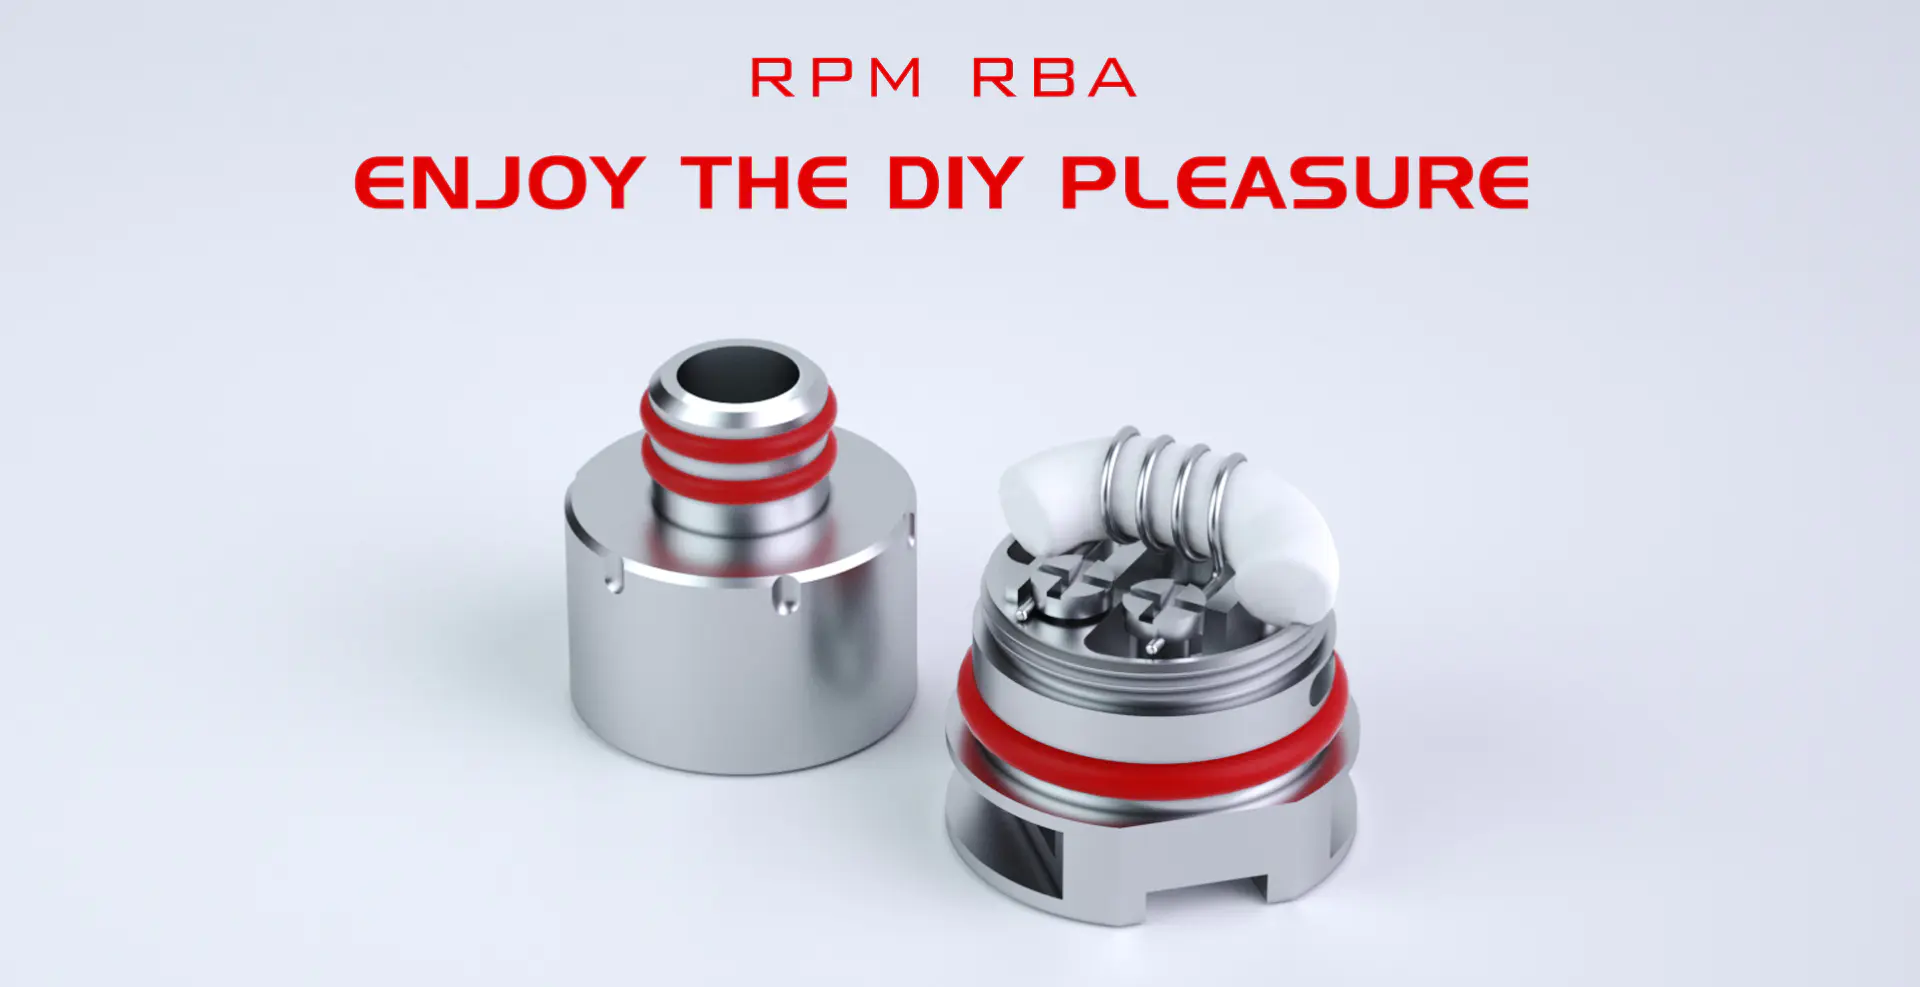 RPM RBA for Your SMOK RPM40 